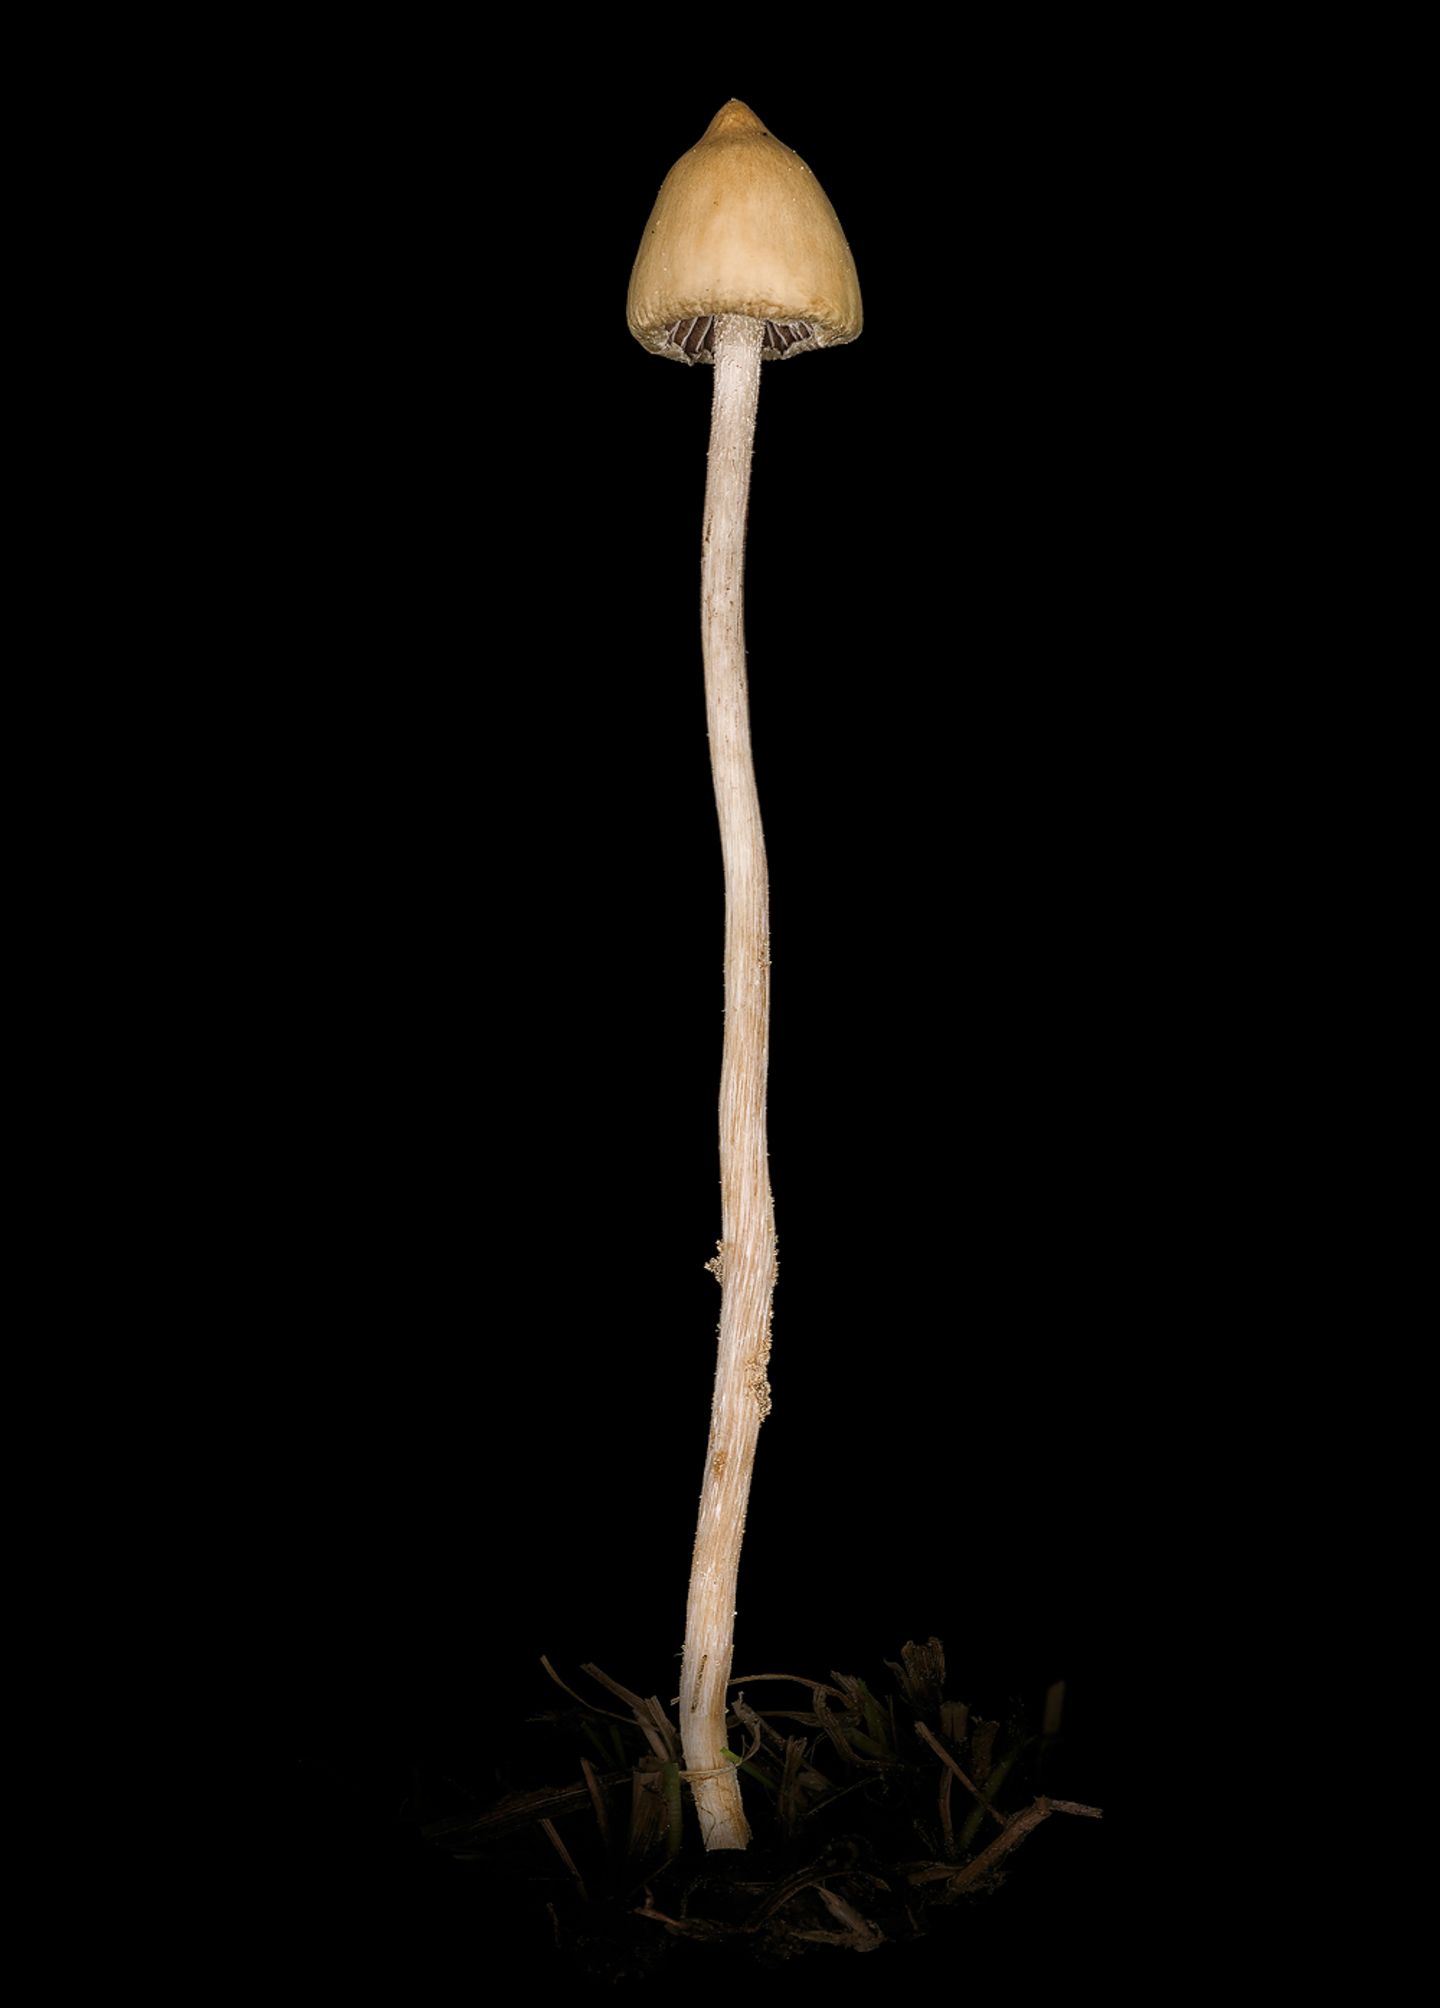 Spitzkegeliger Kahlkopf  Es gibt Pilzsammler, die verzehren diesen Pilz ganz bewusst. Sein Gift Psilocybin bewirkt Rauschzustände, die können aber auch in Wahnvorstellungen umschlagen und eine schwere Psychose auslösen.